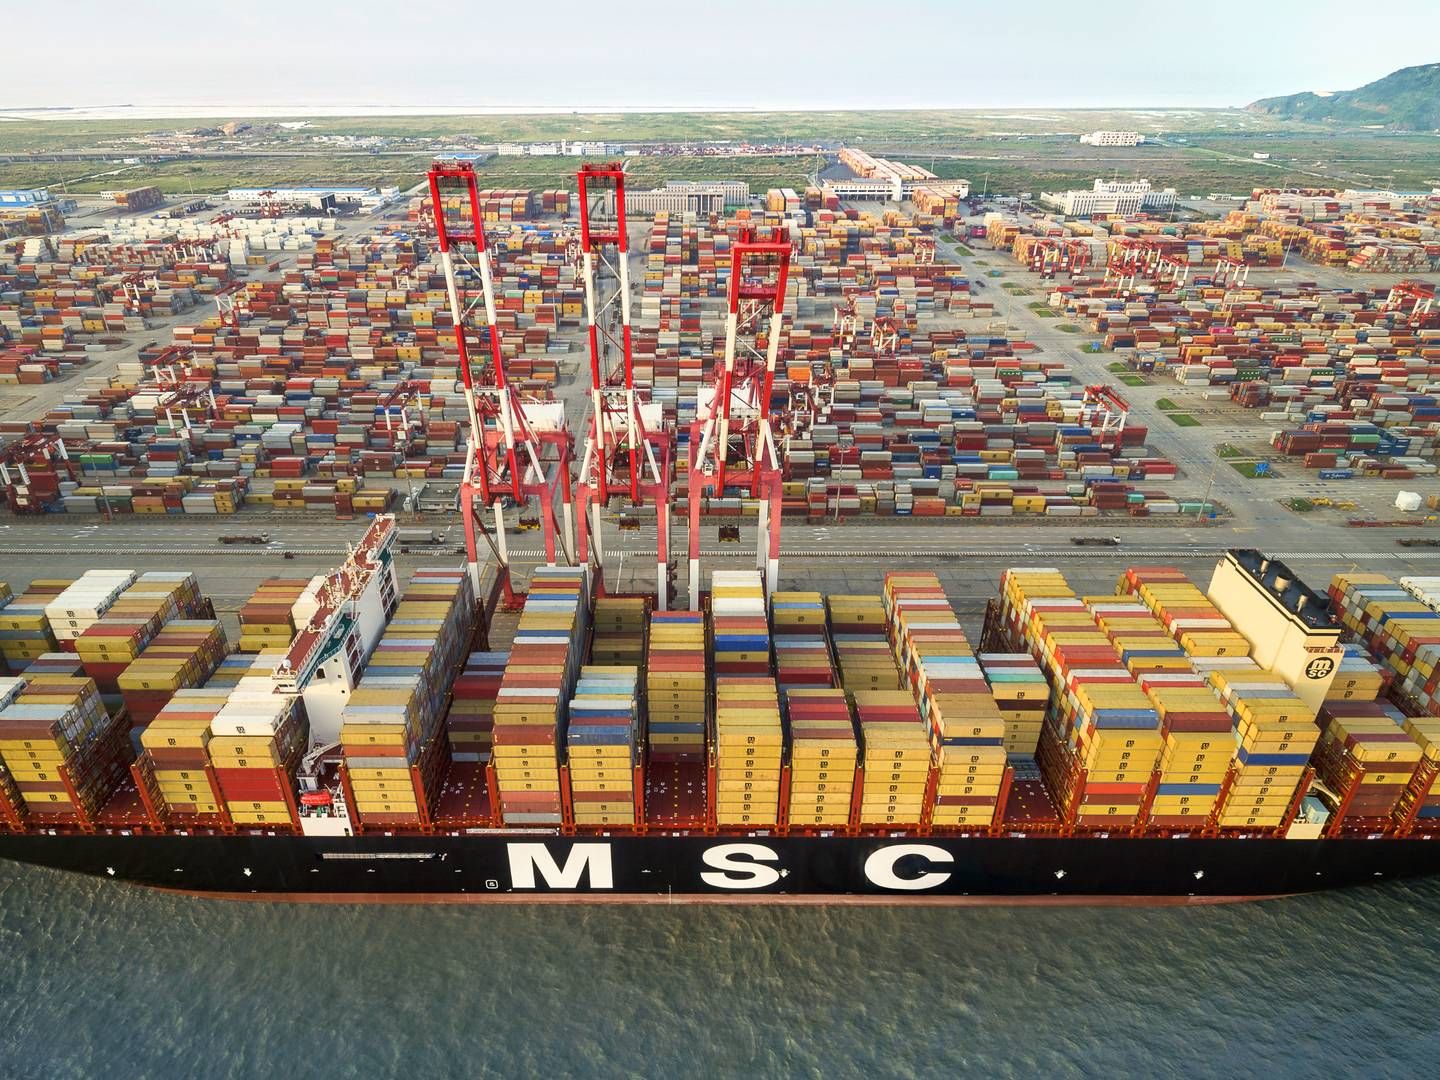 MSC, der er verdens største containerrederi, har bestilt 66 nye skibe med en kapacitet på 1,1 mio. teu, og det svarer til 25,4 pct. af den eksisterende flåde ifølge Alphaliner. | Foto: MSC